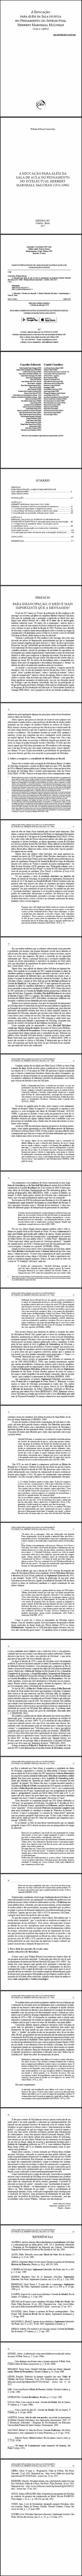 A EDUCAÇÃO PARA ALÉM DA SALA DE AULA NO PENSAMENTO DO INTELECTUAL HERBERT MARSHALL MCLUHAN (1911-1980)